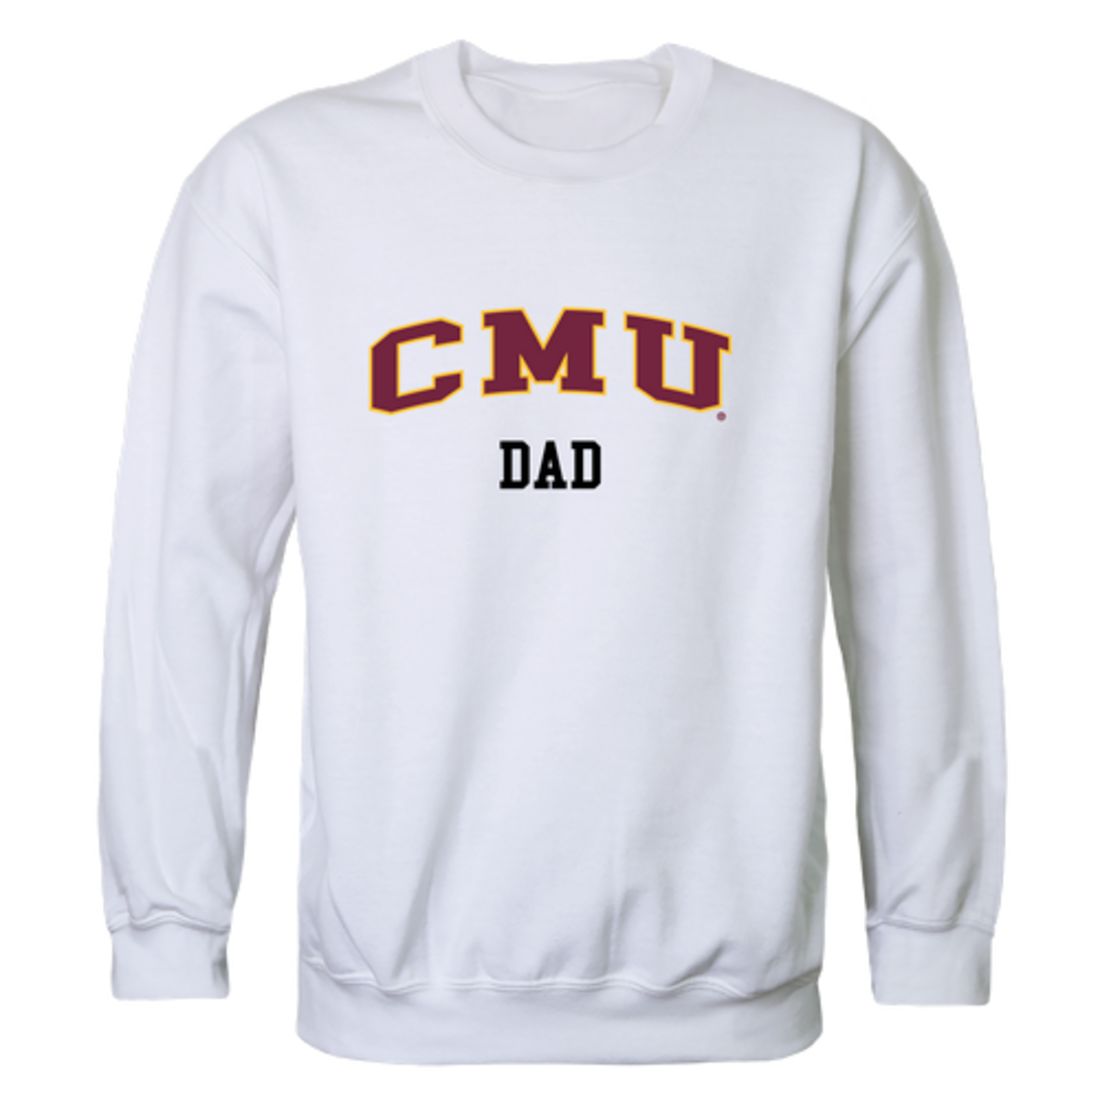 CMU Central Michigan University Chippewas Dad Fleece Crewneck Pullover Sweatshirt Heather Grey-Campus-Wardrobe